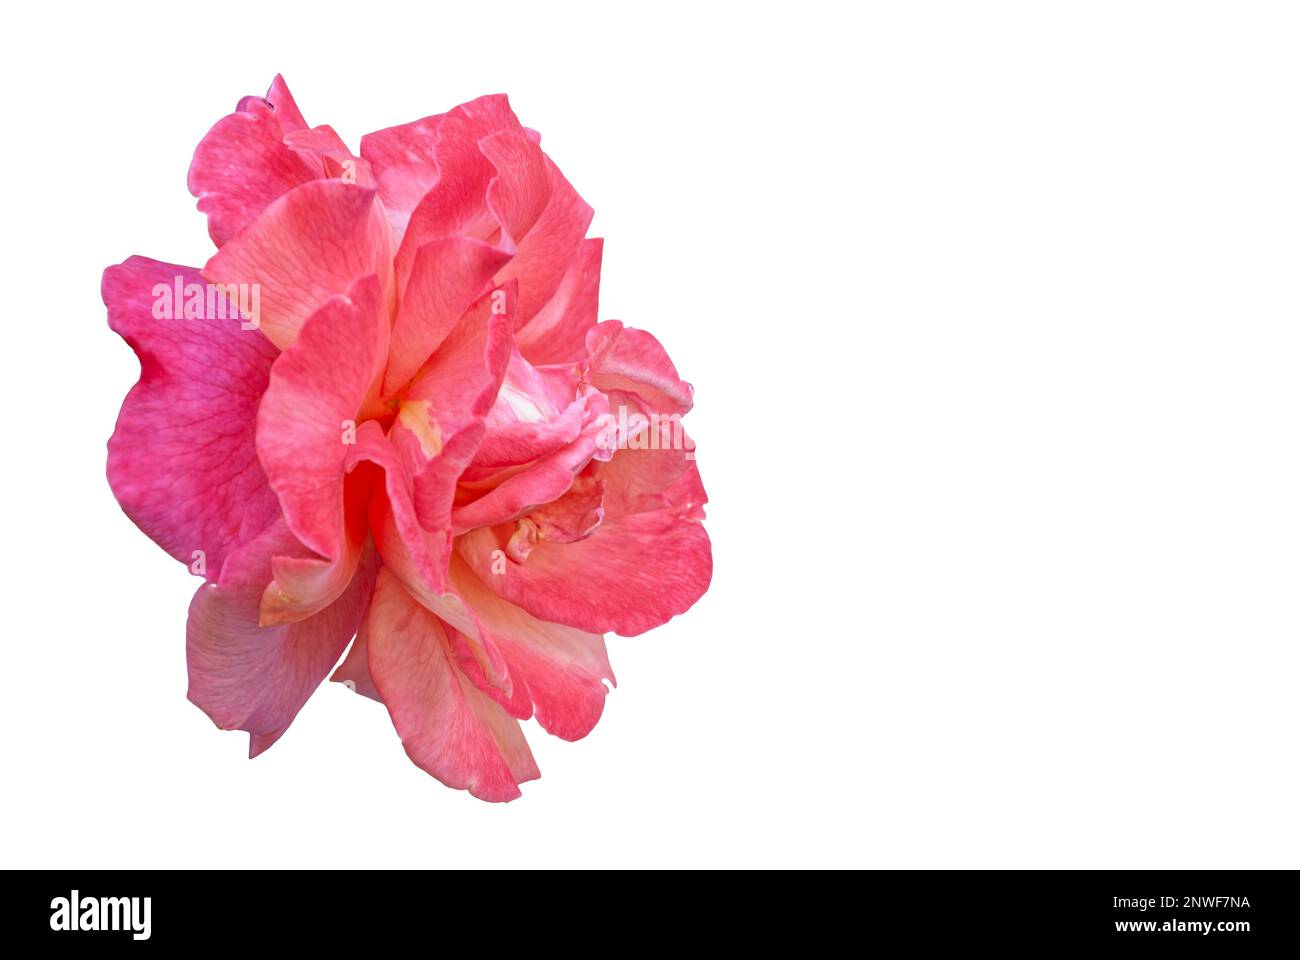 fiore di rosa - un fiore rosso brillante su uno sfondo bianco, un fiore sviluppato isolato dallo sfondo, grandi petali dell'infiorescenza visibile Foto Stock